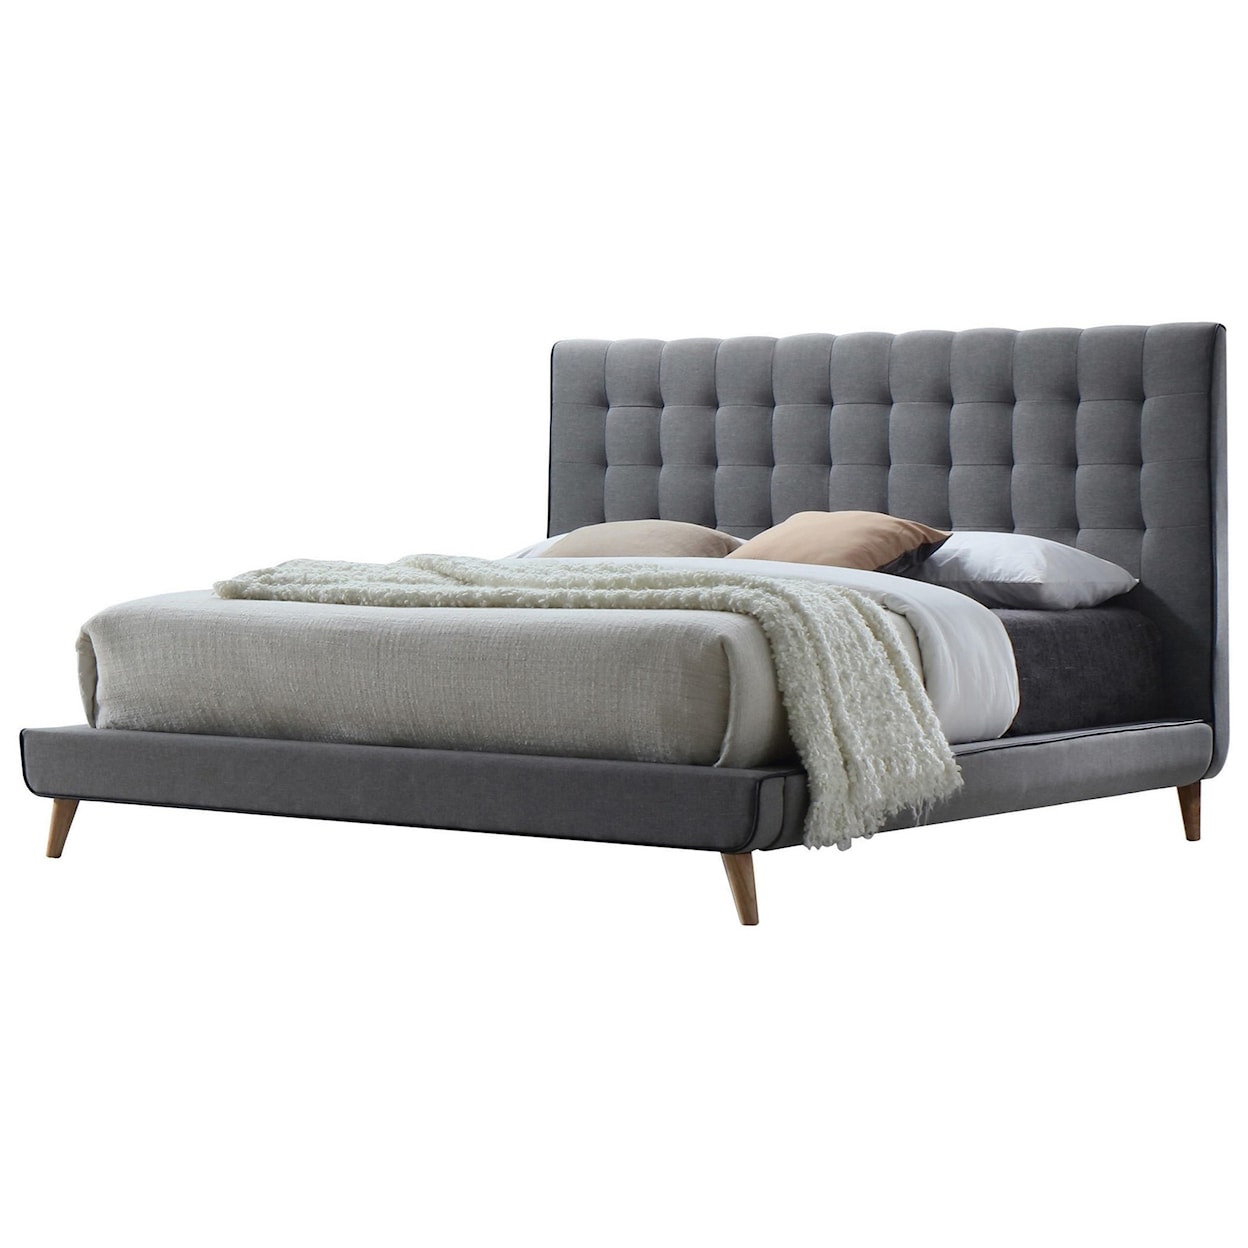 Acme Furniture Valda Queen Bed